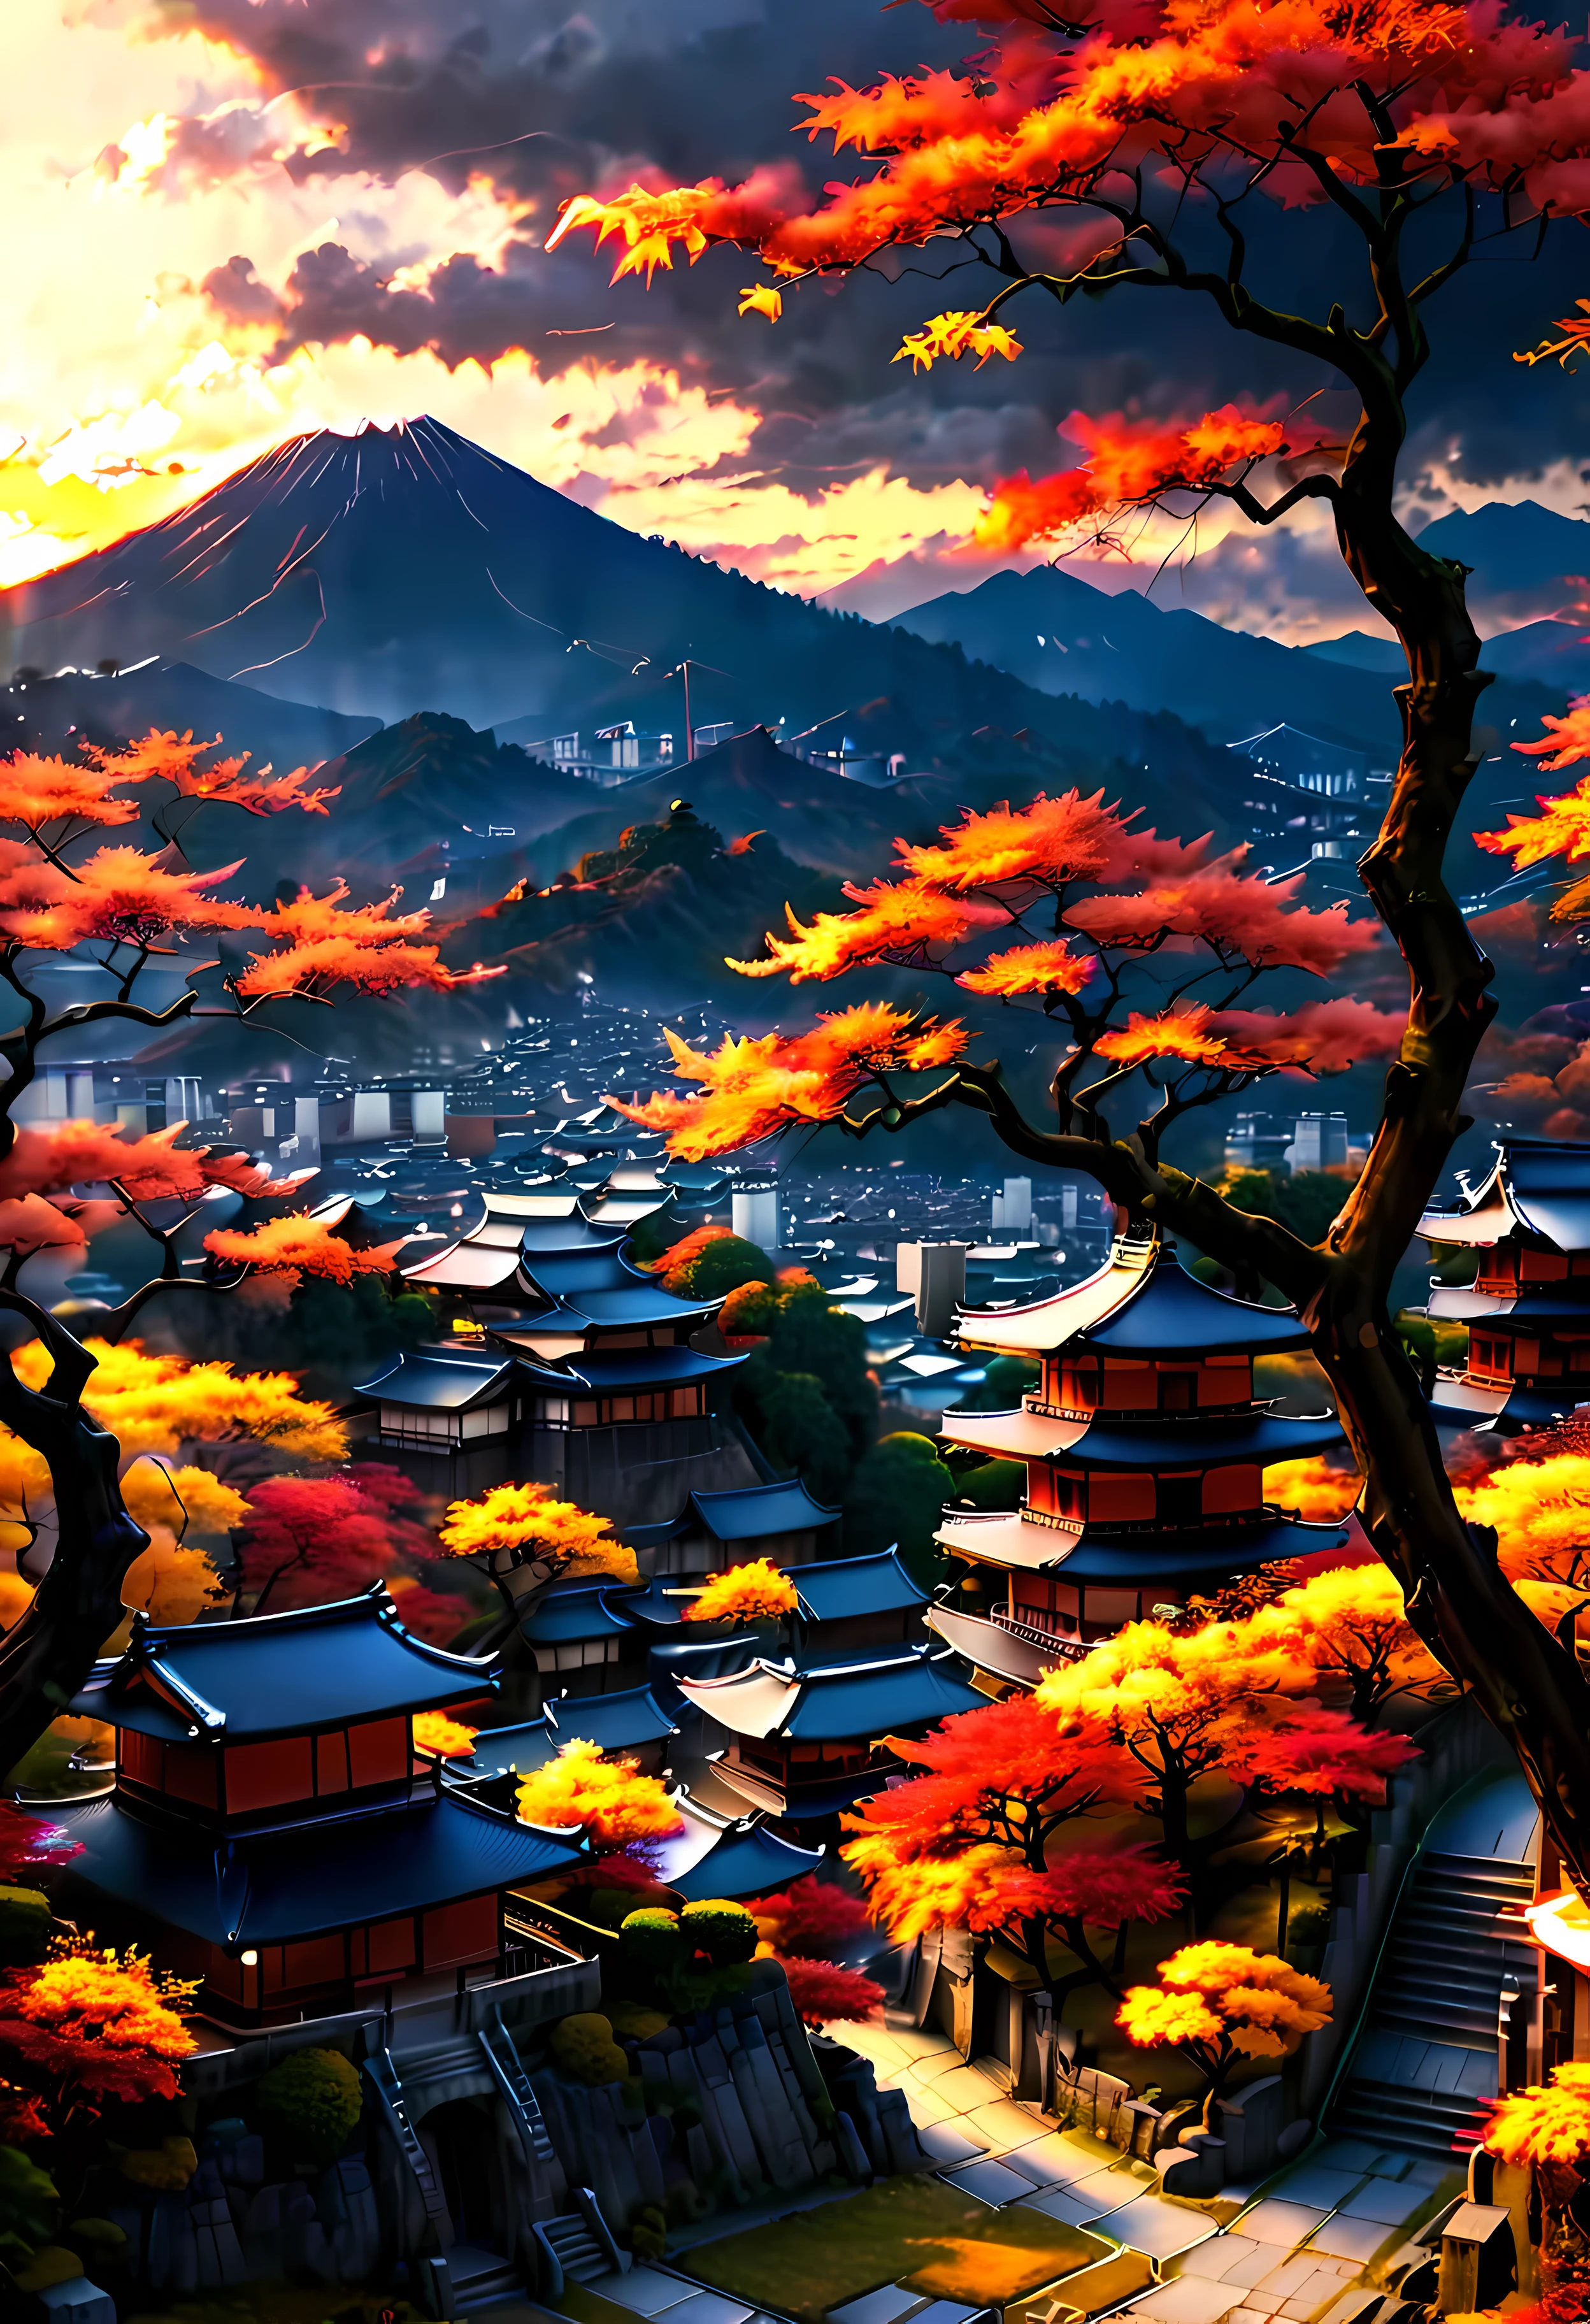 تطل شجرة Red Fall Tree في شرفة الحديقة على مدينة كيوتو القديمة مع إطلالة على الجبل, المناظر الطبيعية الساحرة للمدينة القديمة يغمرها ضوء غروب الشمس,((وقت الساعة الذهبية):1.2),((المدينة اليابانية القديمة):1.2),((سماء الغروب في الخريف):1.1),ضوء الساعة الذهبية الحساسة, خلفيات مذهلة, محيط جميل, لوحة ماتي متفائلة, عمل فني رقمي جميل, المدينة اليابانية القديمة background, مشاهد جميلة ومفصلة, UHD تحت الأرض, مناظر طبيعية فائقة الدقة, مفهوم الفن المهيب, المدينة القديمة الجميلة. |(تحفة بدقة 16 كيلو كحد أقصى), أفضل نوعية, (جودة خلفية CG Unit 16K مفصلة للغاية),(ألوان ناعمة 16 كيلو فن رقمي مفصل للغاية),مفصلة للغاية. | صورة مثالية,16 ألف يو إي 5,اللوحة الرسمية, رقيق, عمق الميدان, لا يوجد تباين, التركيز الحاد النظيف, احترافي, لا وضوح. | (((تفاصيل اكثر))).